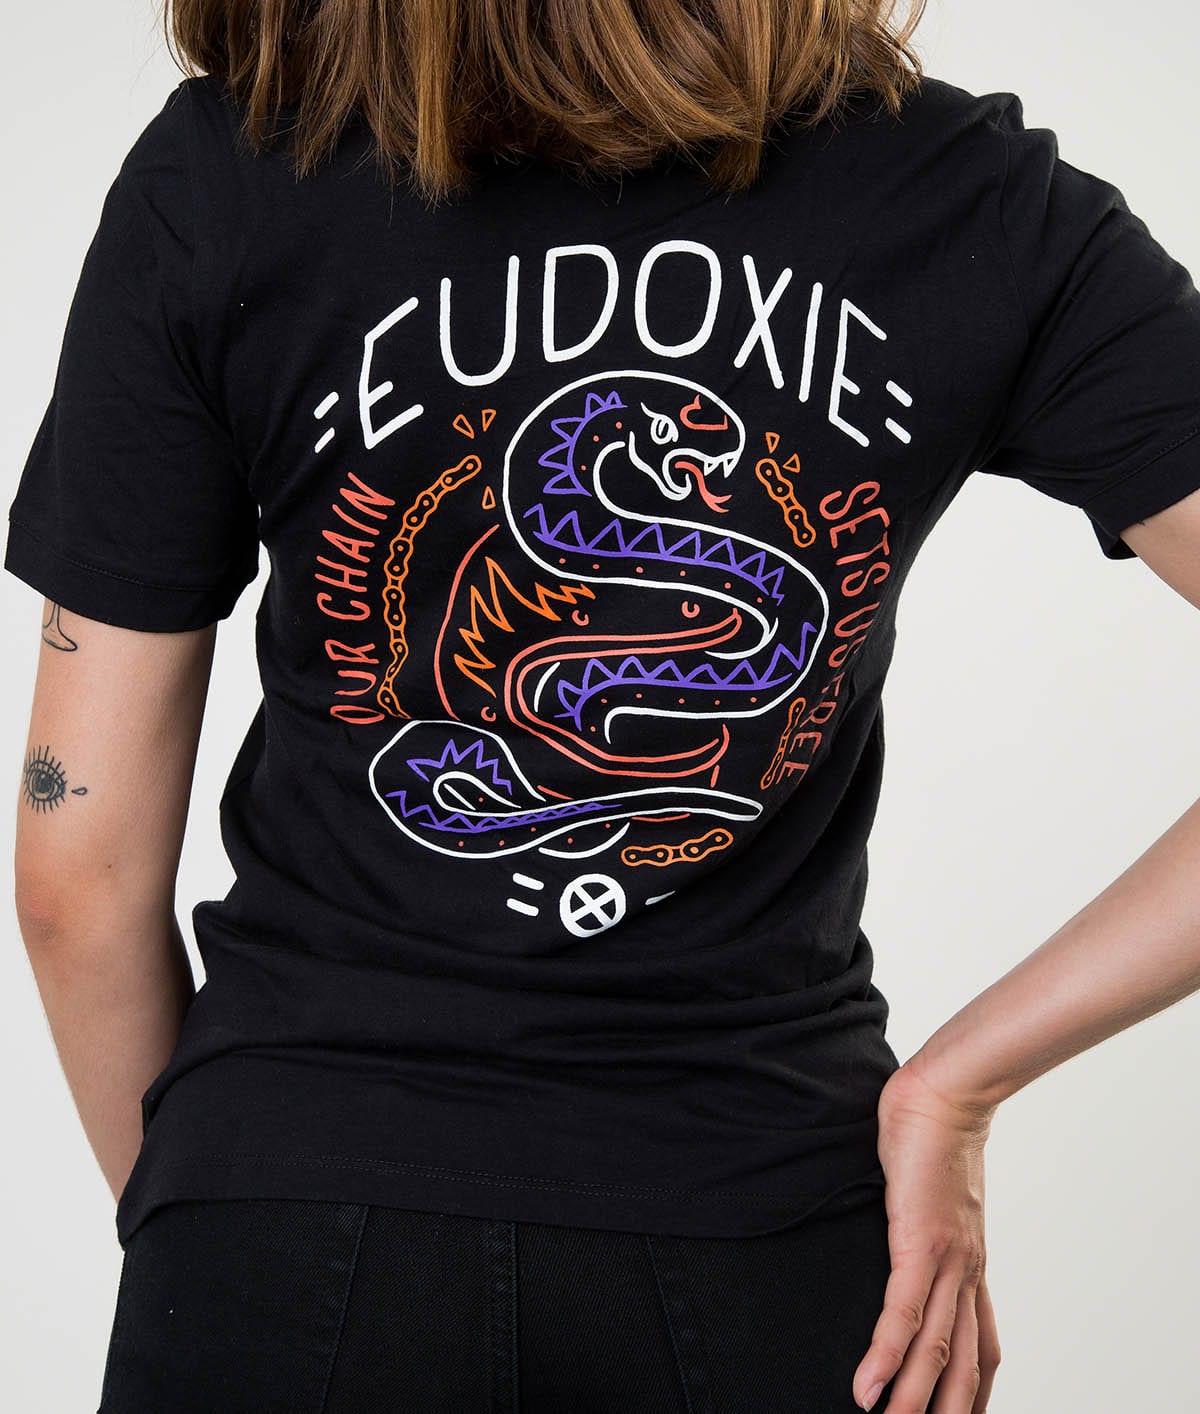 Eudoxie Black Masha T-Shirt - Large - Bild 4